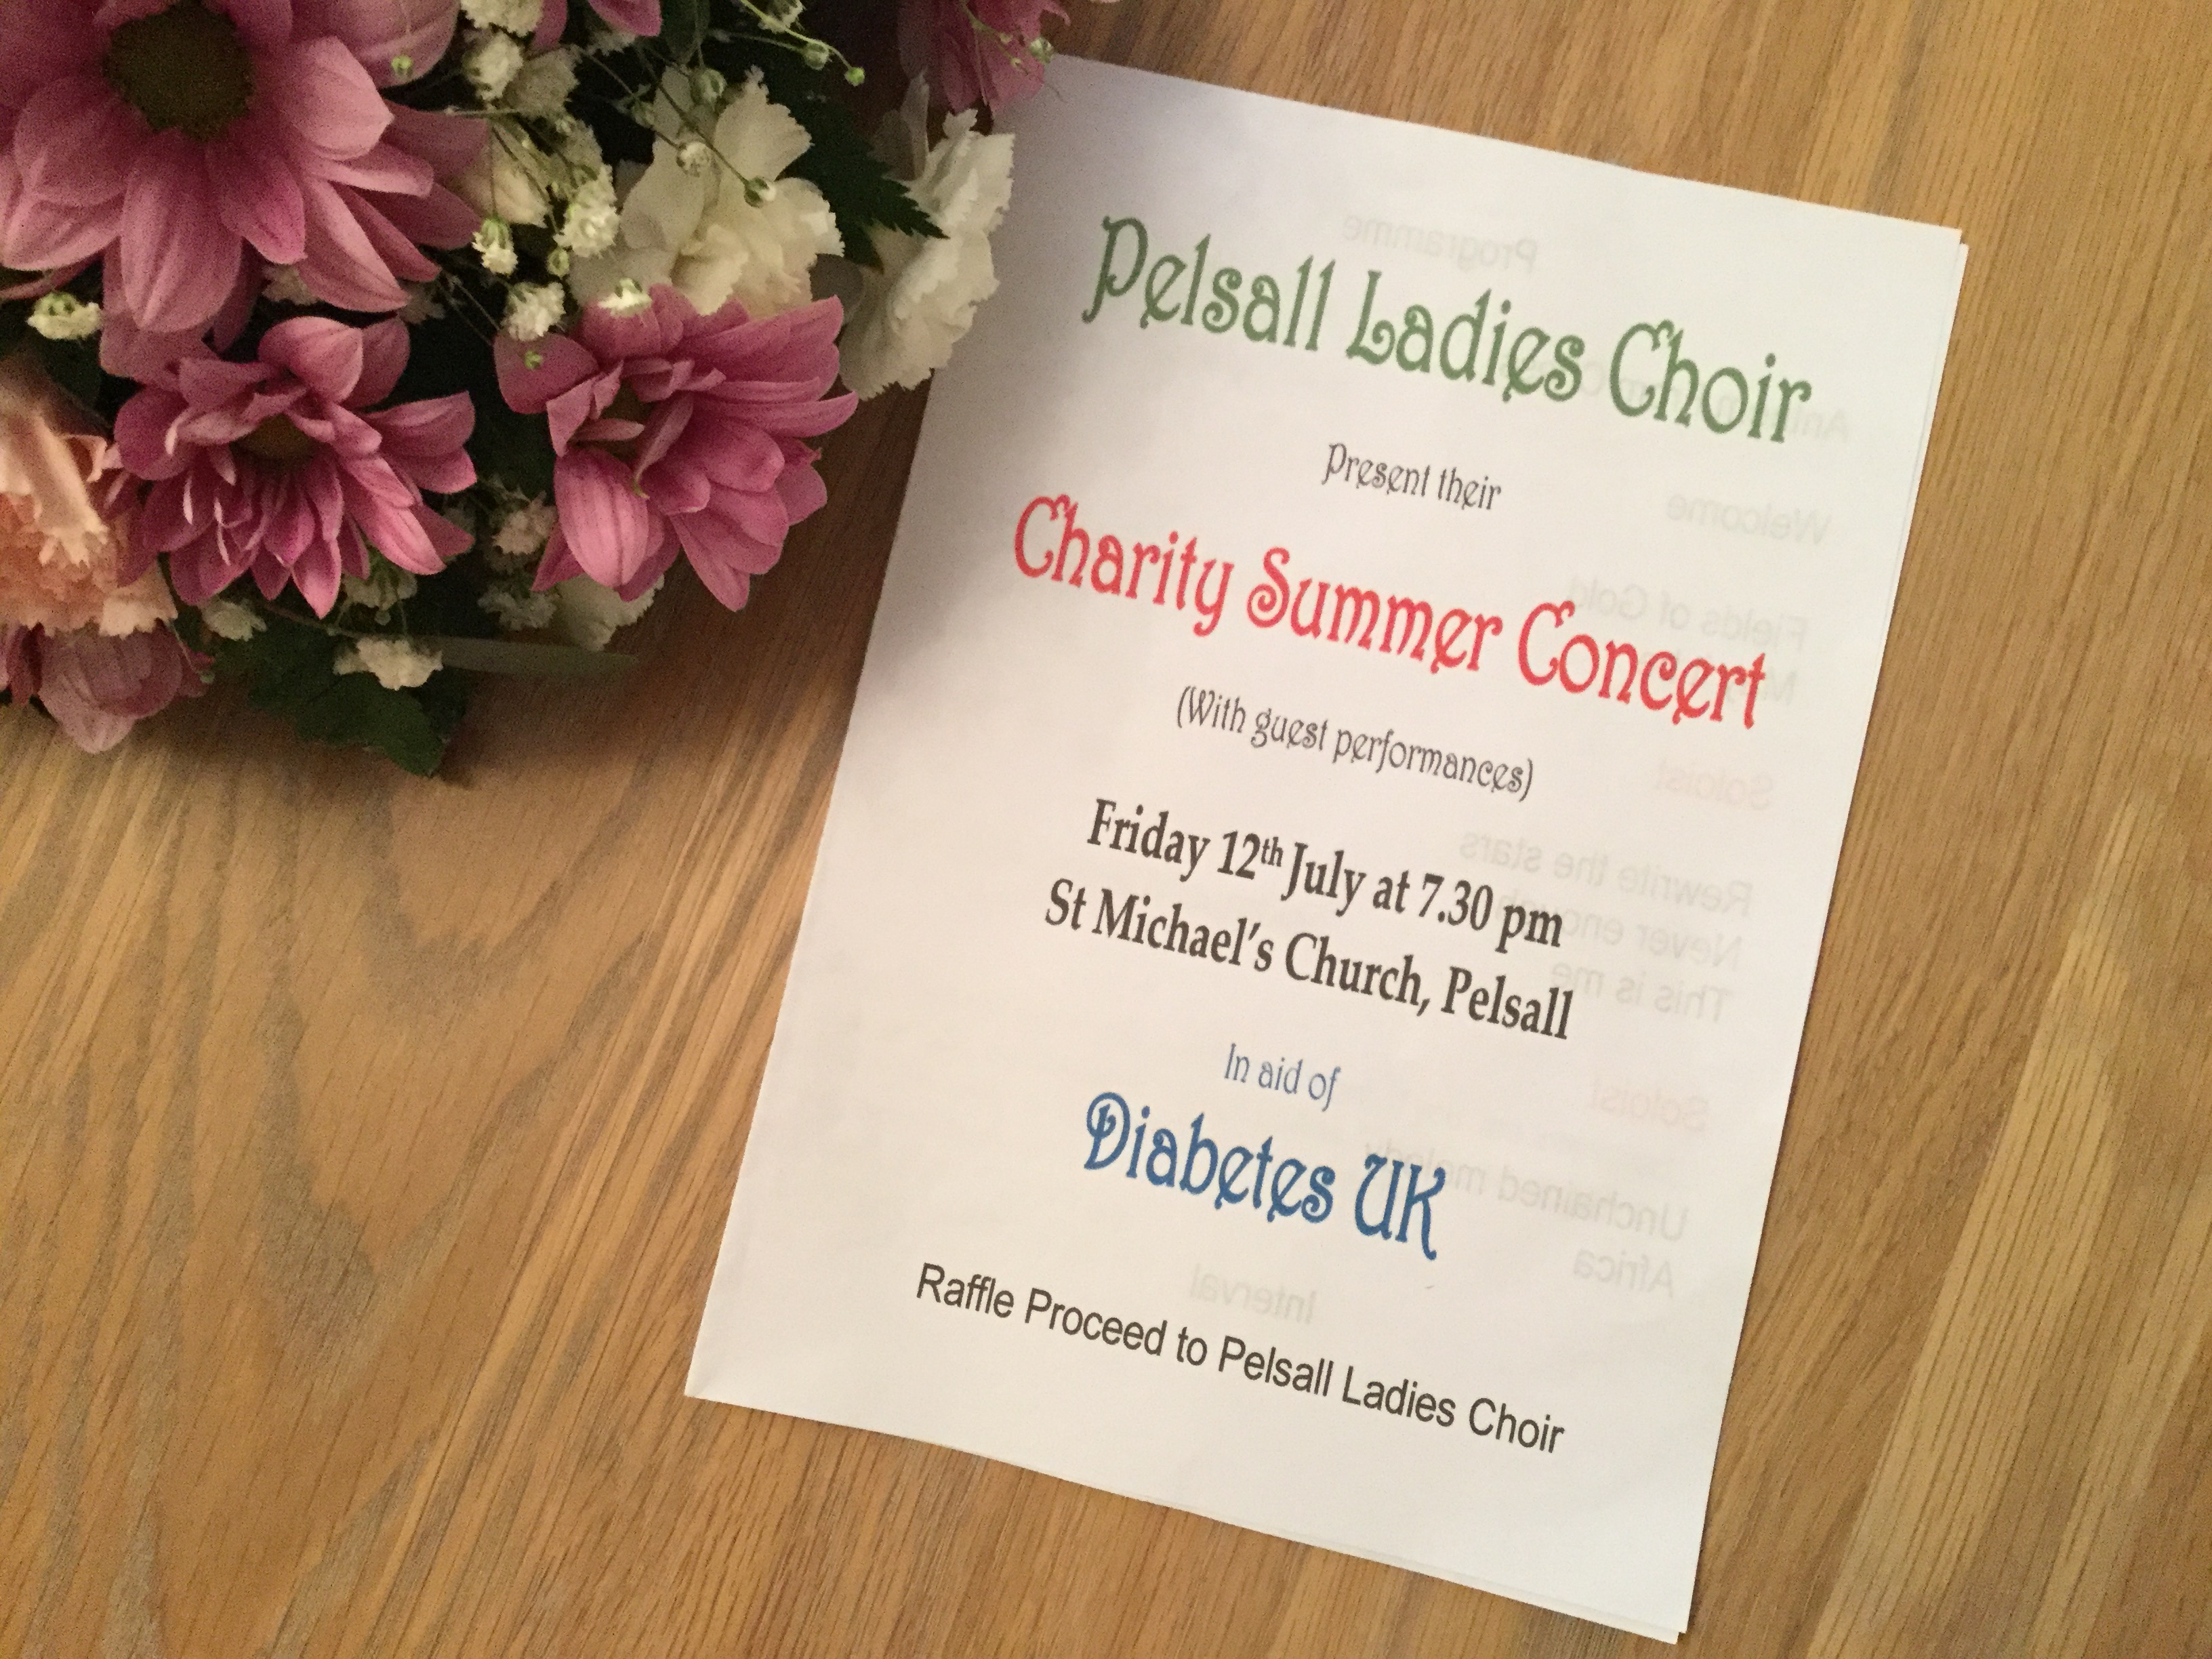 Pelsall Ladies Choir Summer Concert